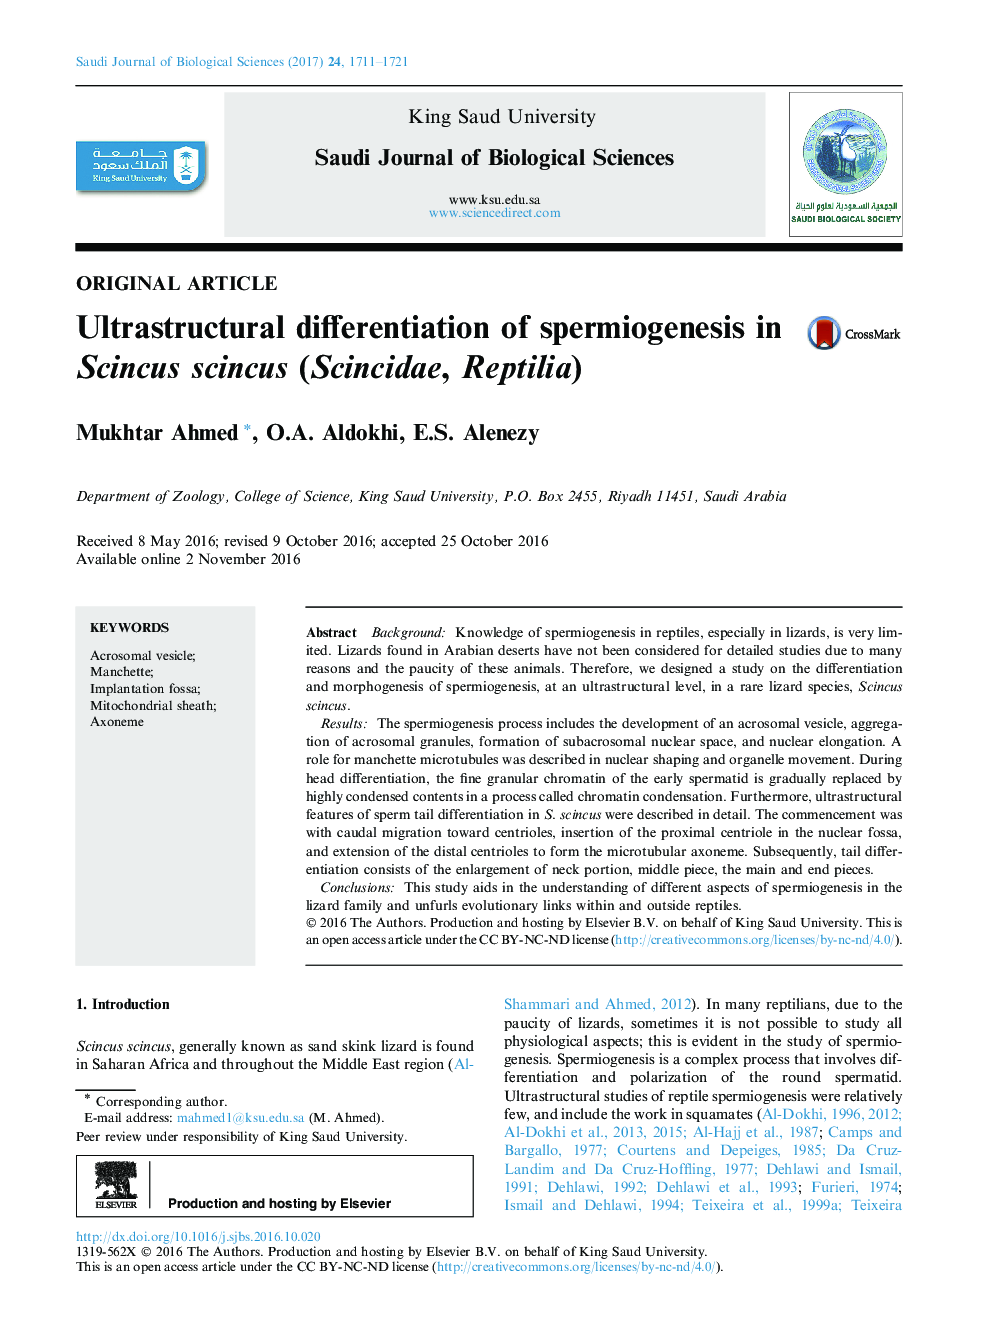 Original articleUltrastructural differentiation of spermiogenesis in Scincus scincus (Scincidae, Reptilia)